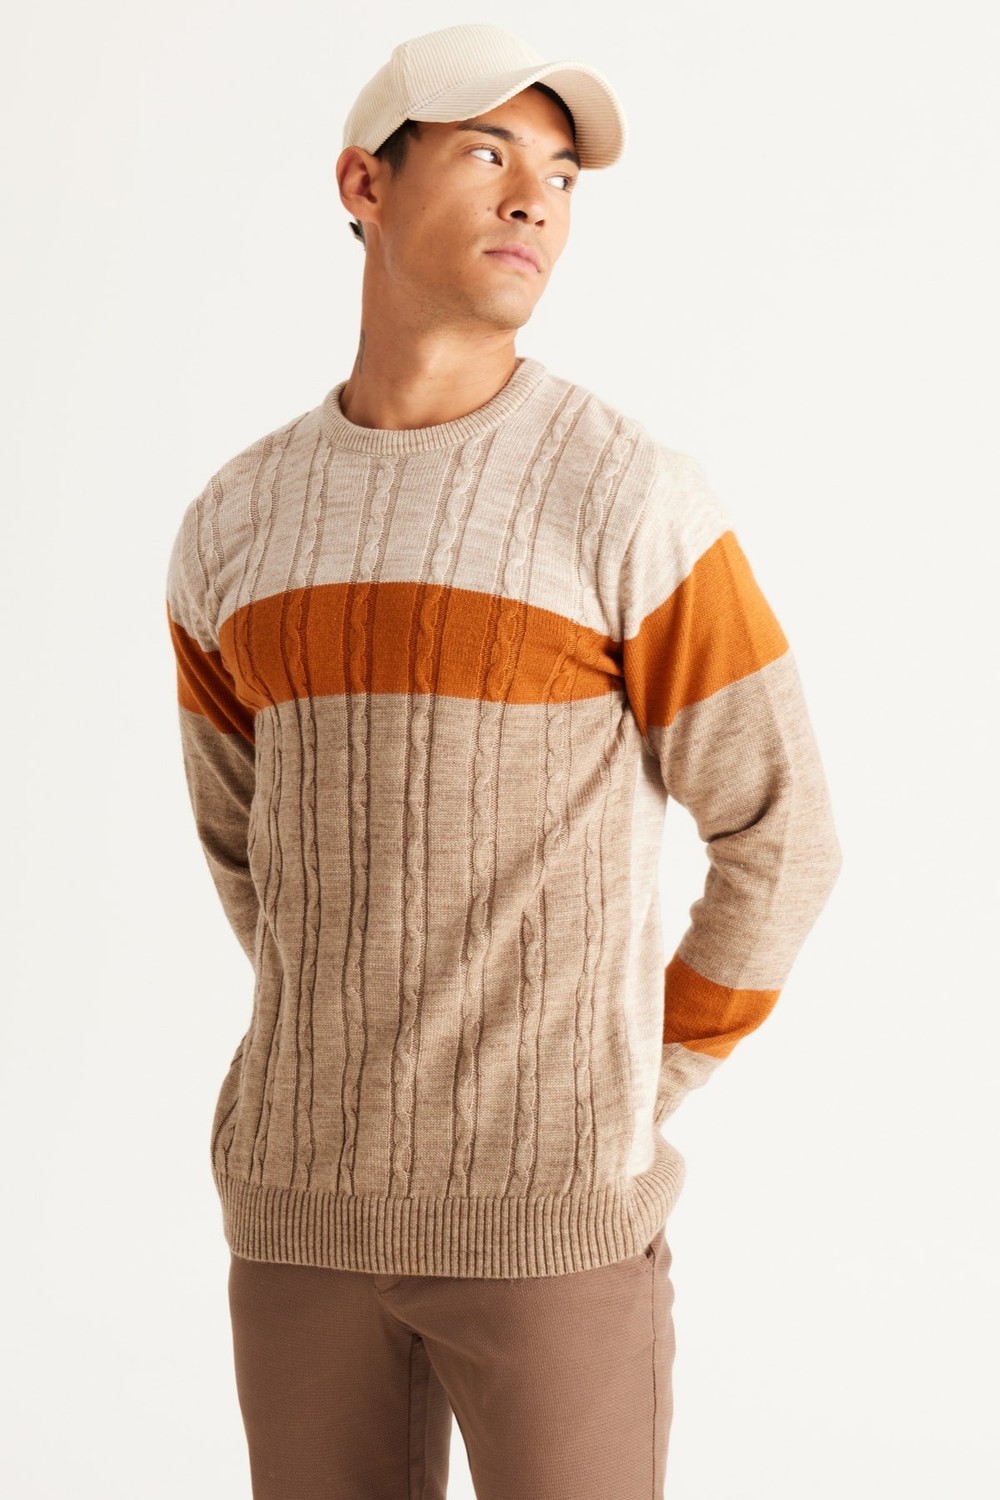 AC&Co / Altınyıldız Classics Men's Beige-mink Standard Fit Normal Cut Crew Neck Colorblok Patterned Knitwear Sweater.